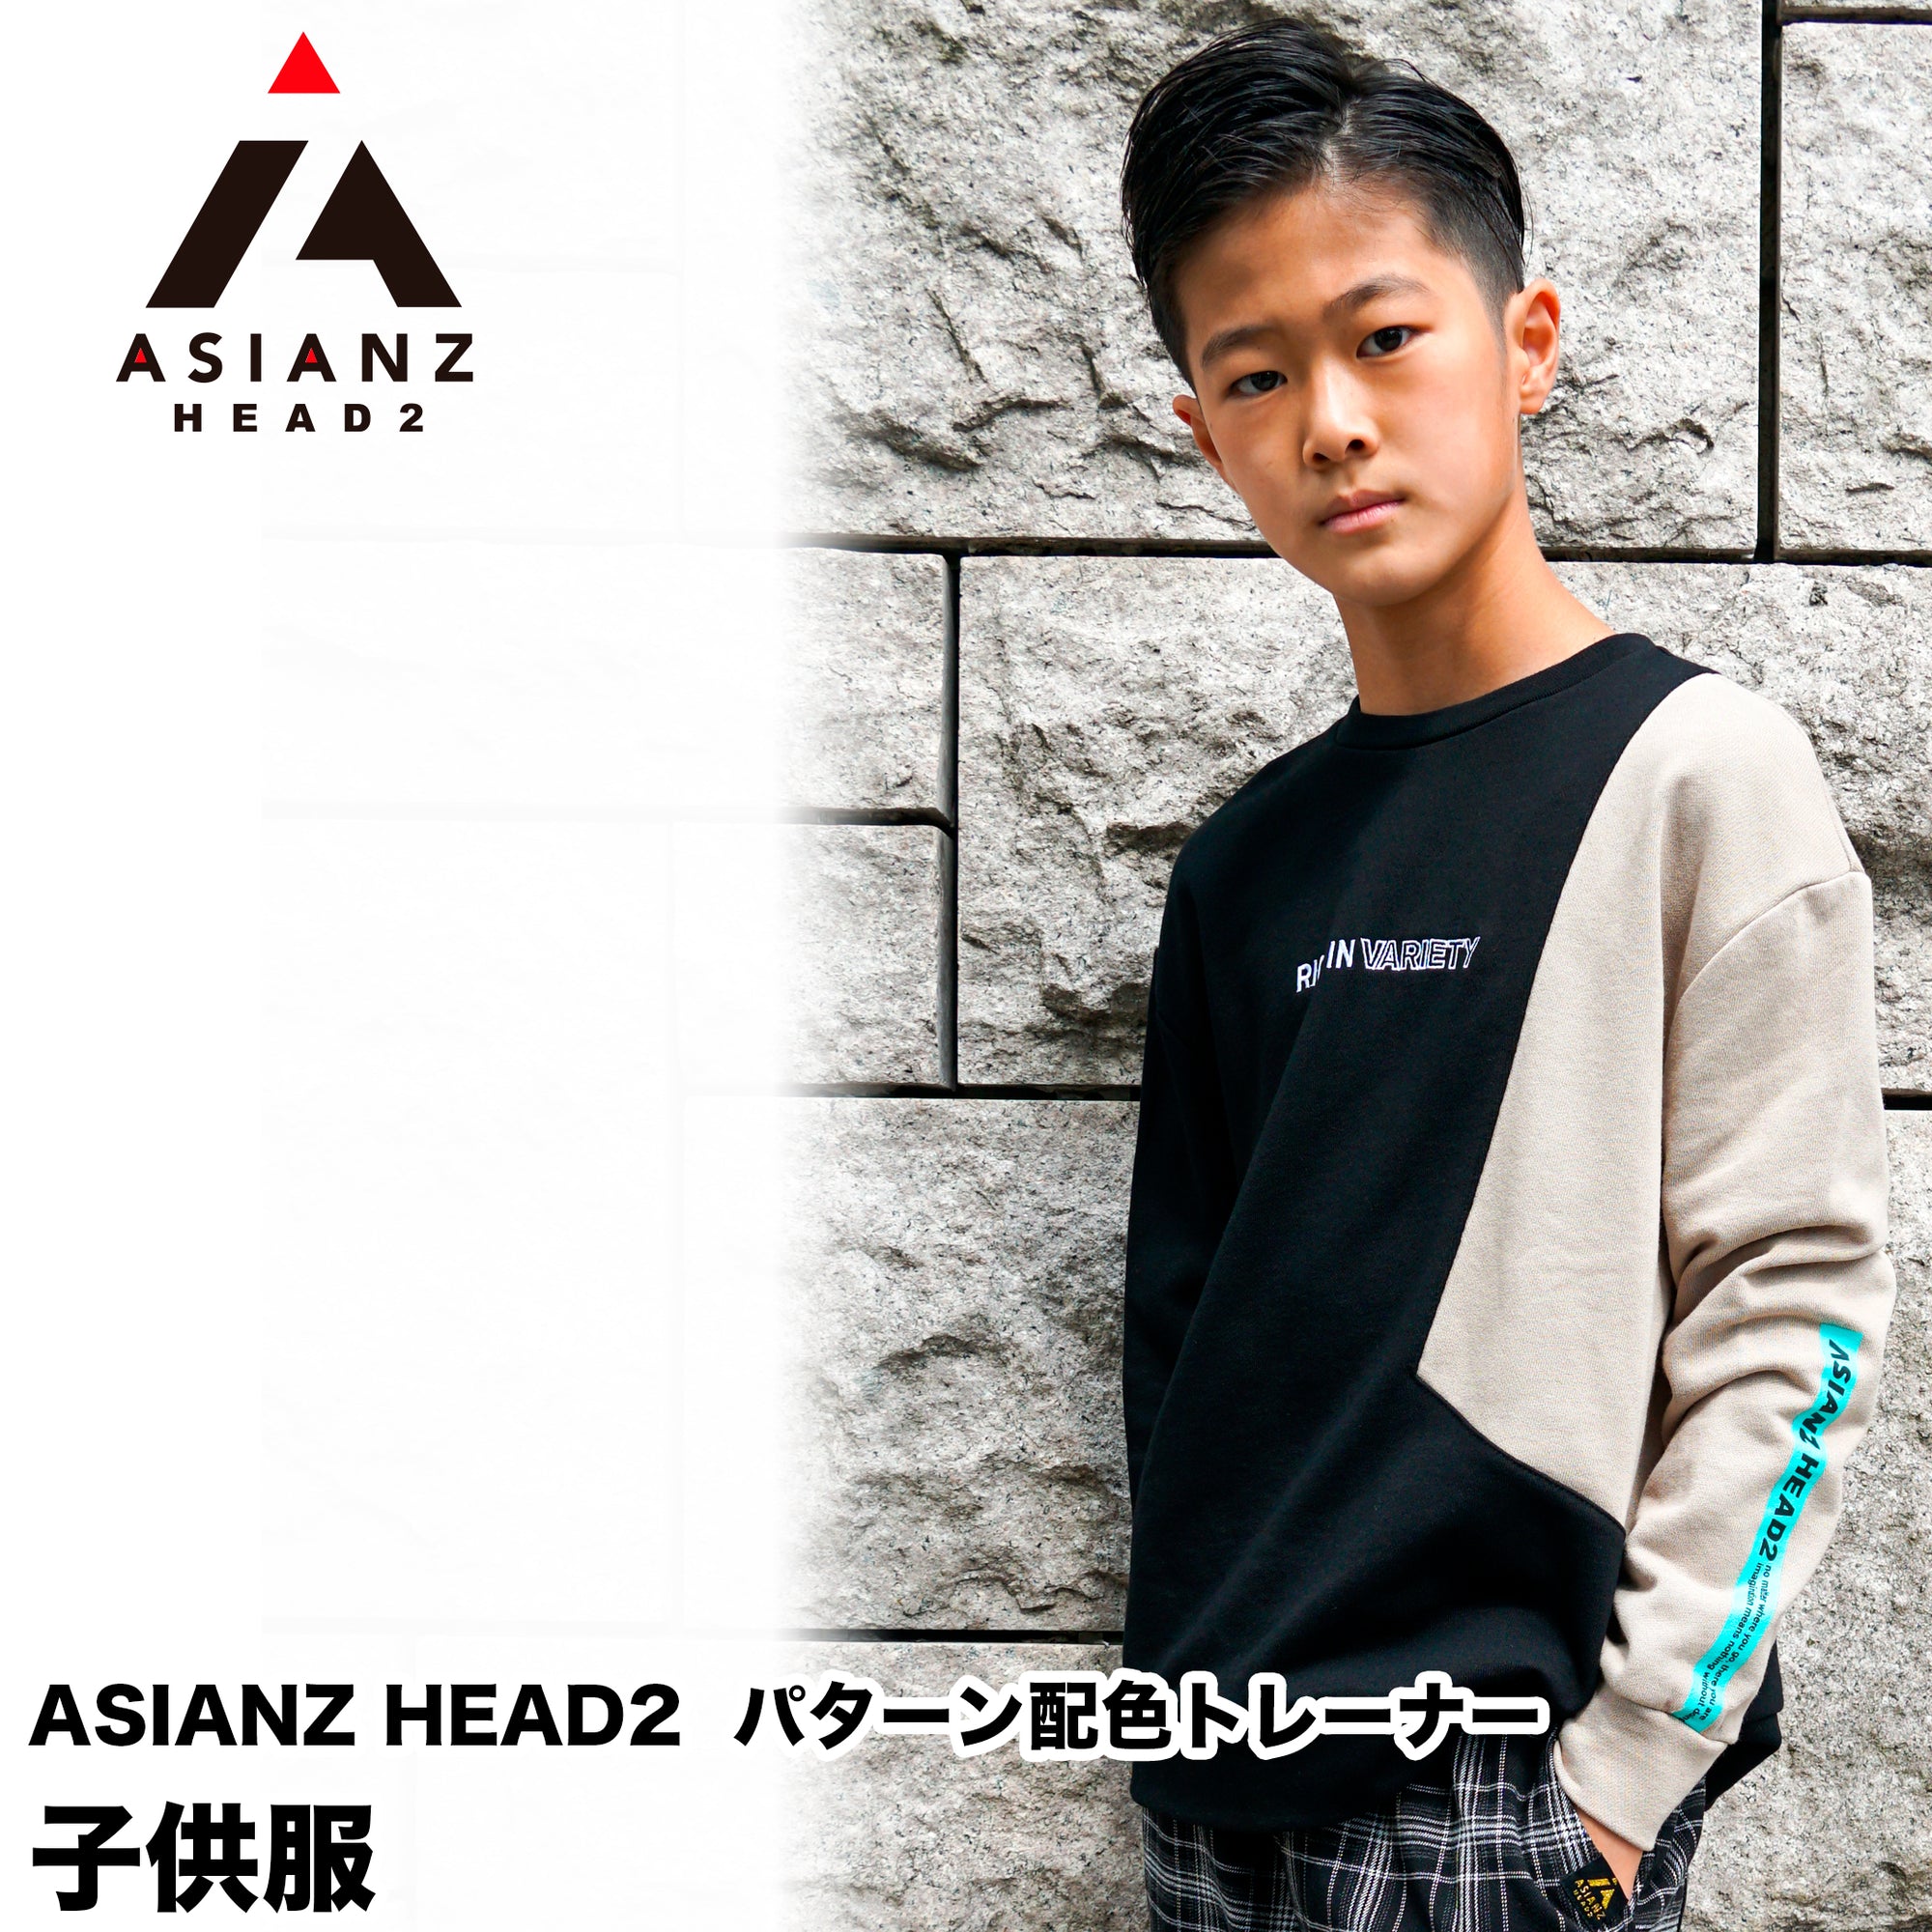 (40%オフ! セール商品)ASIANZ HEAD2 パターン配色トレーナー キッズウェアー